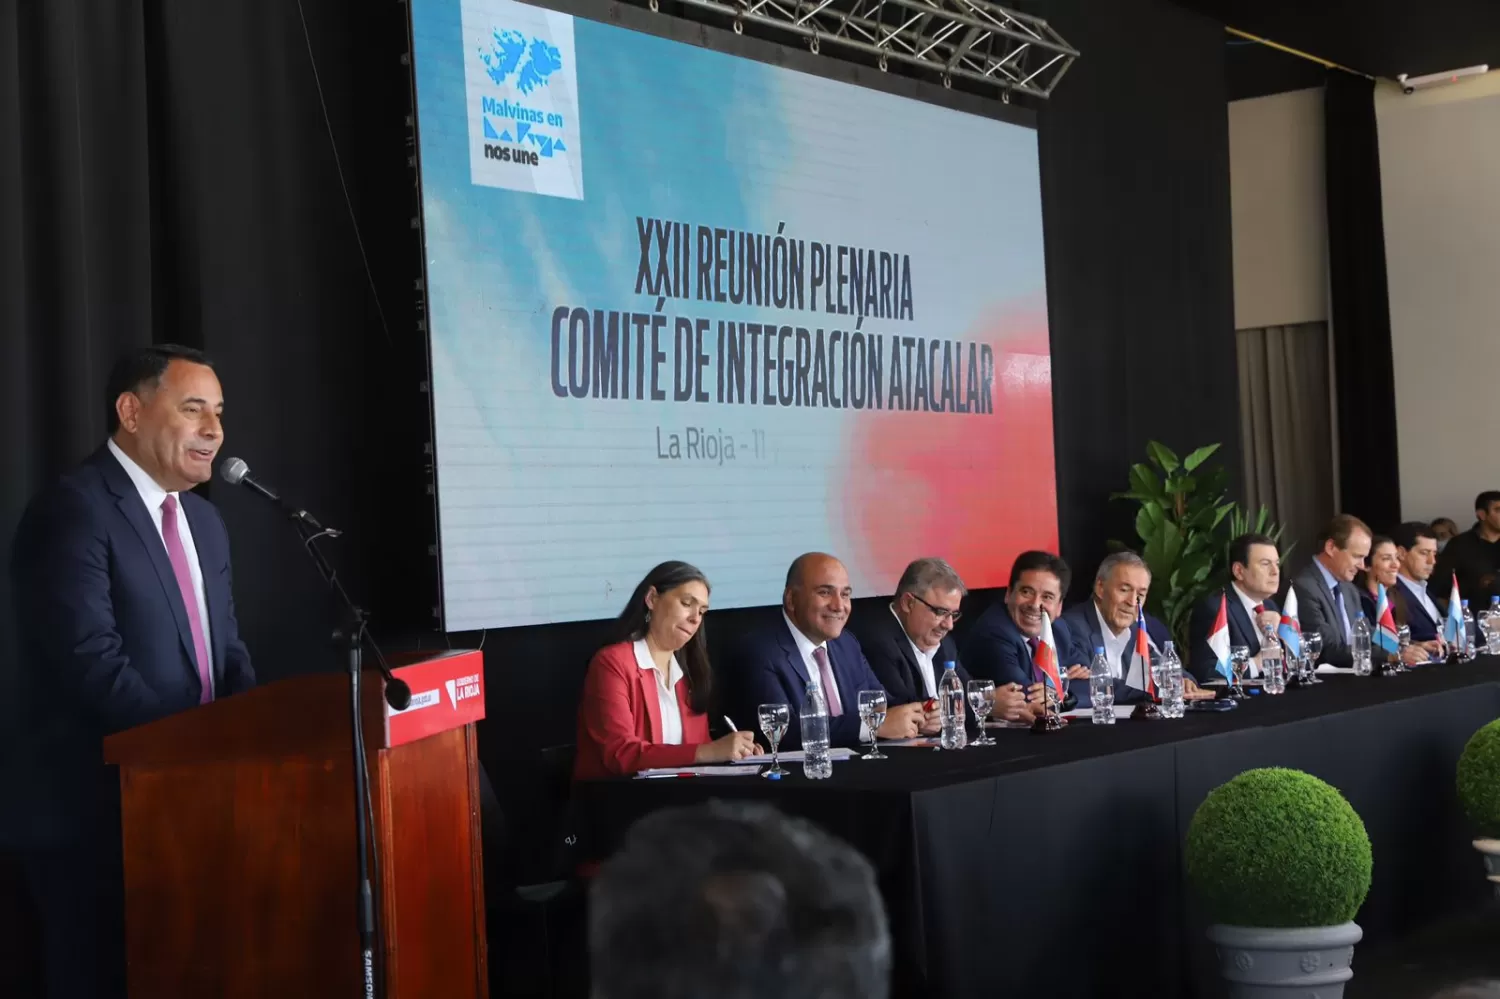 EN LA RIOJA. Regino Amado participó de la reunión, en representación del Gobierno provincial. Foto: Comunicación Pública